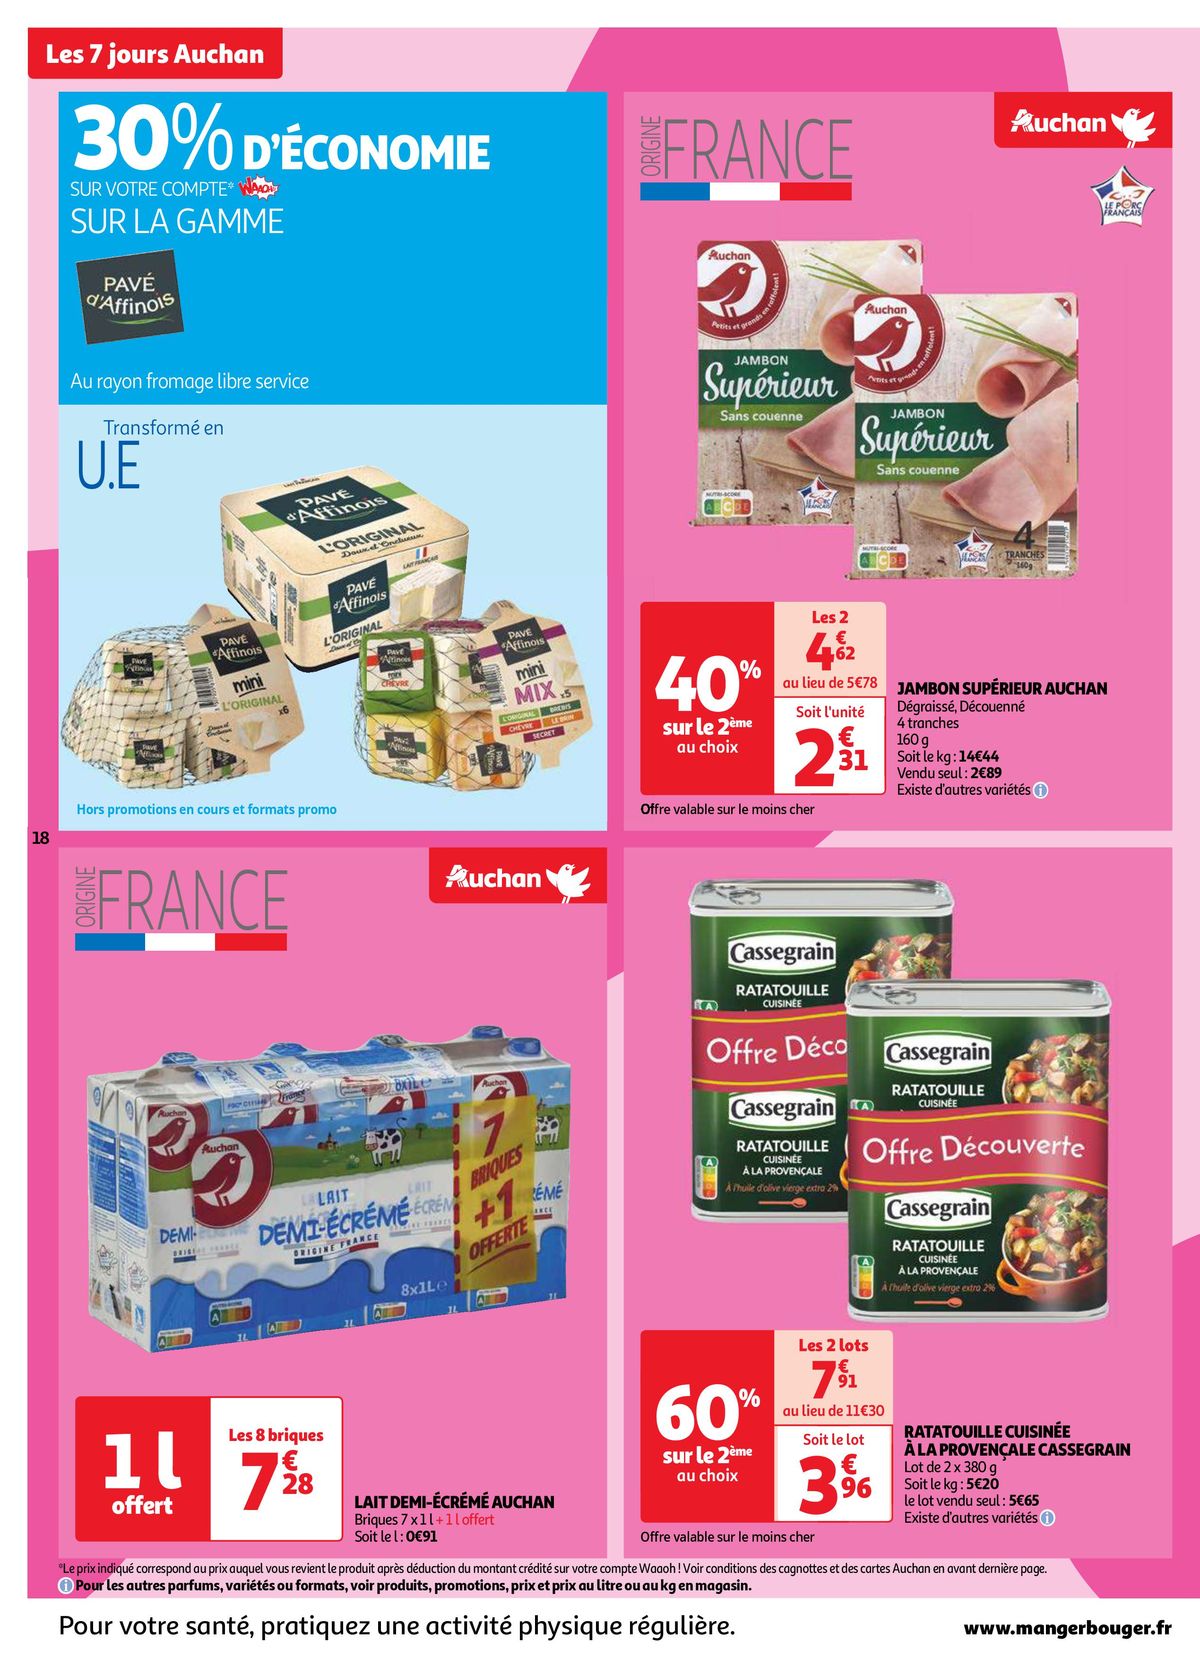 Catalogue Les 7 jours Auchan, c'est maintenant !, page 00018